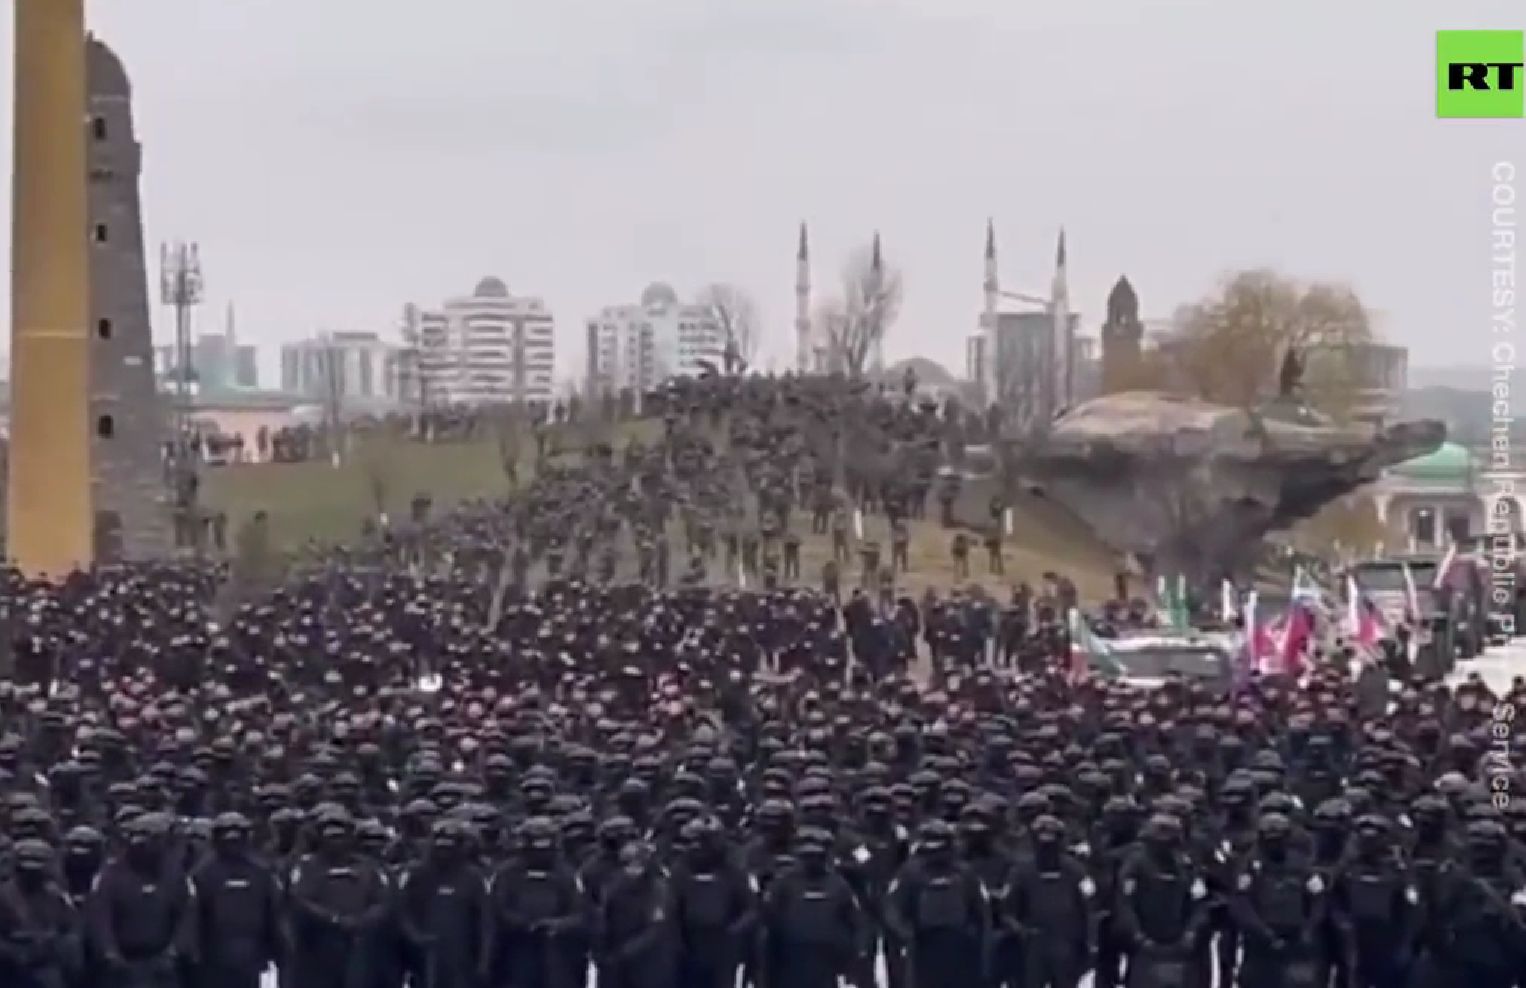 Csecsen katonák érkeztek Ukrajnába az oroszoknak segíteni